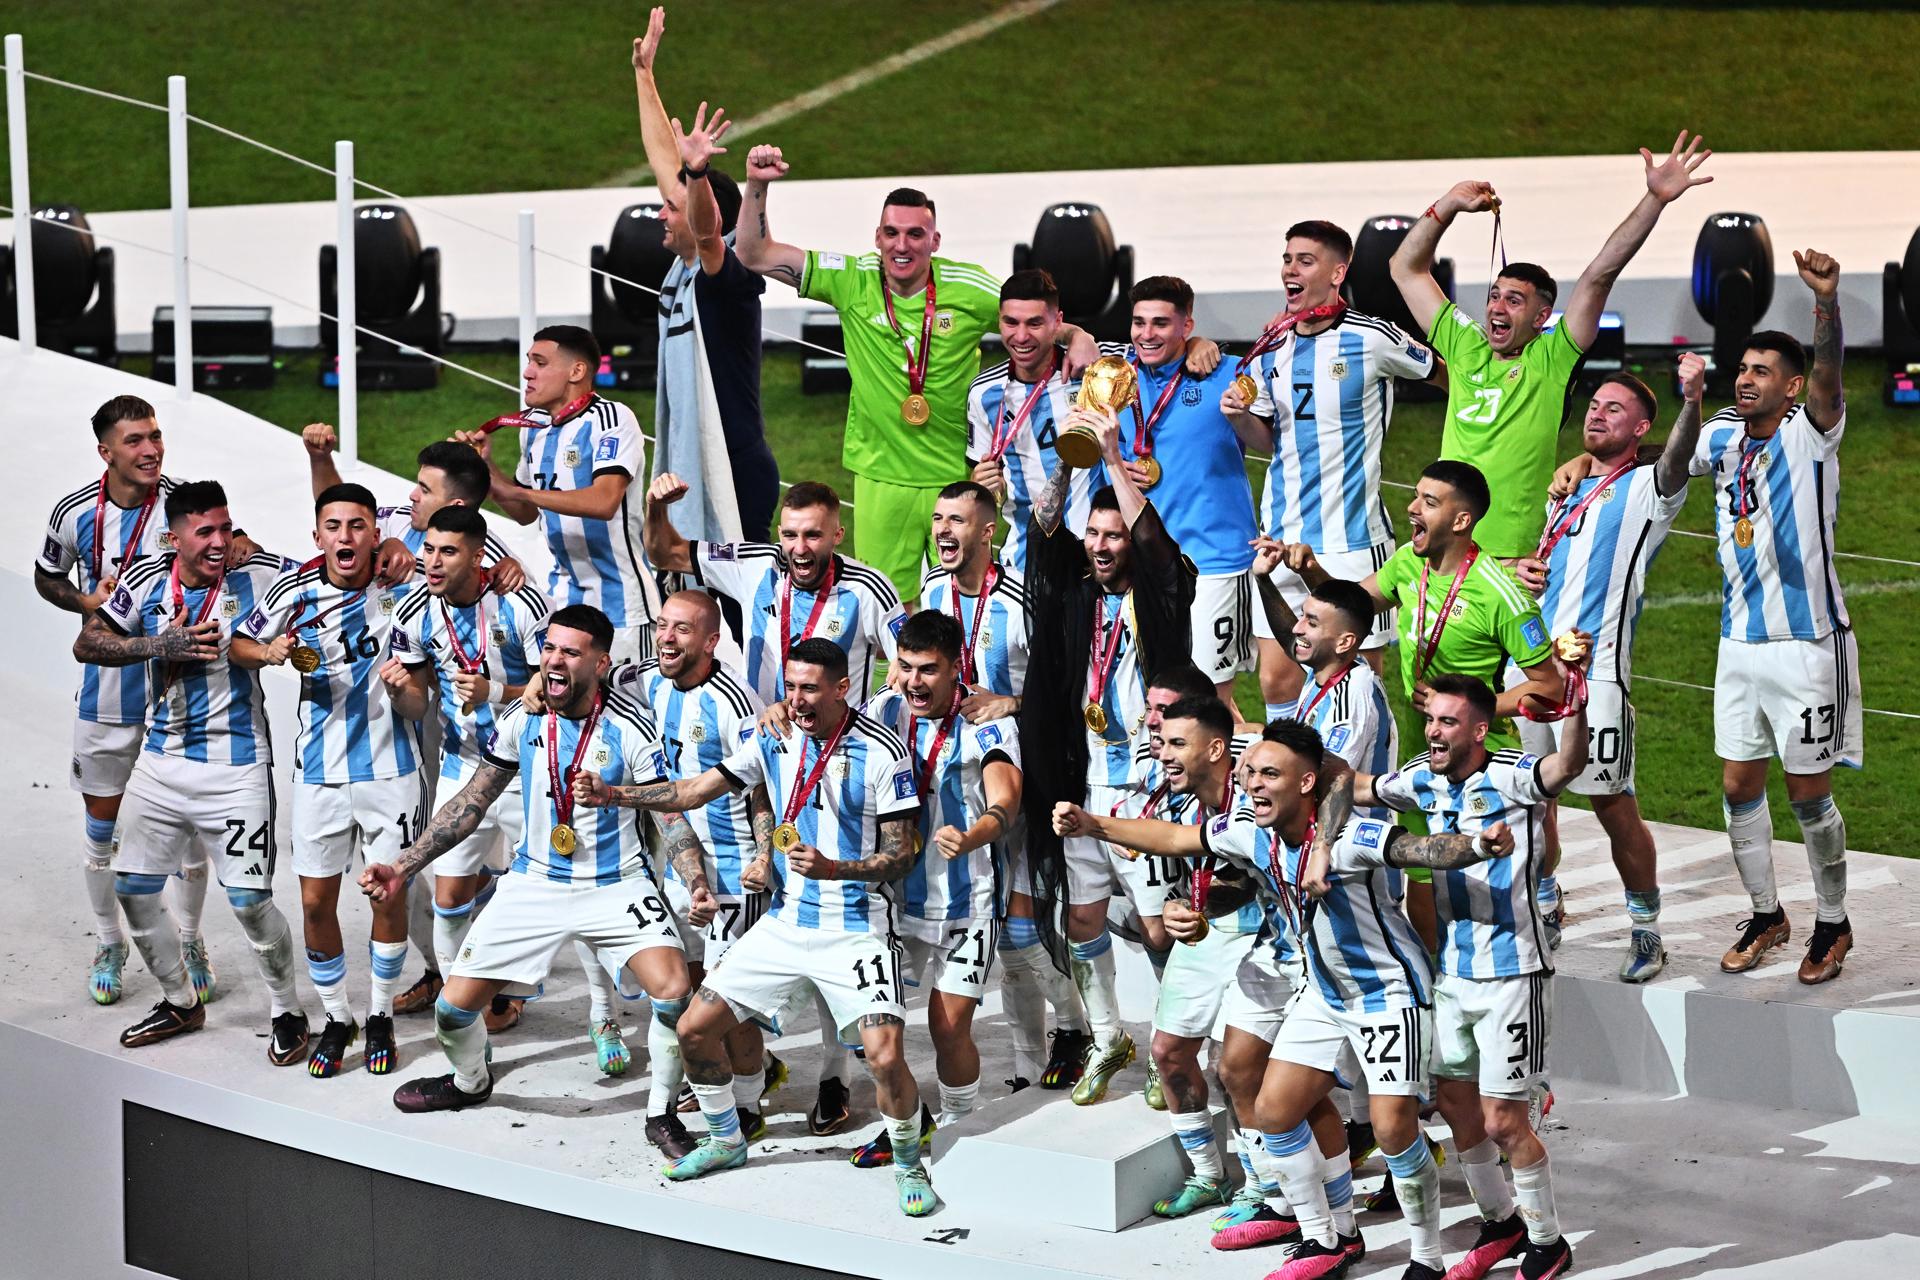 Uruguay cumple el sueño y es campeón del mundo - CONMEBOL